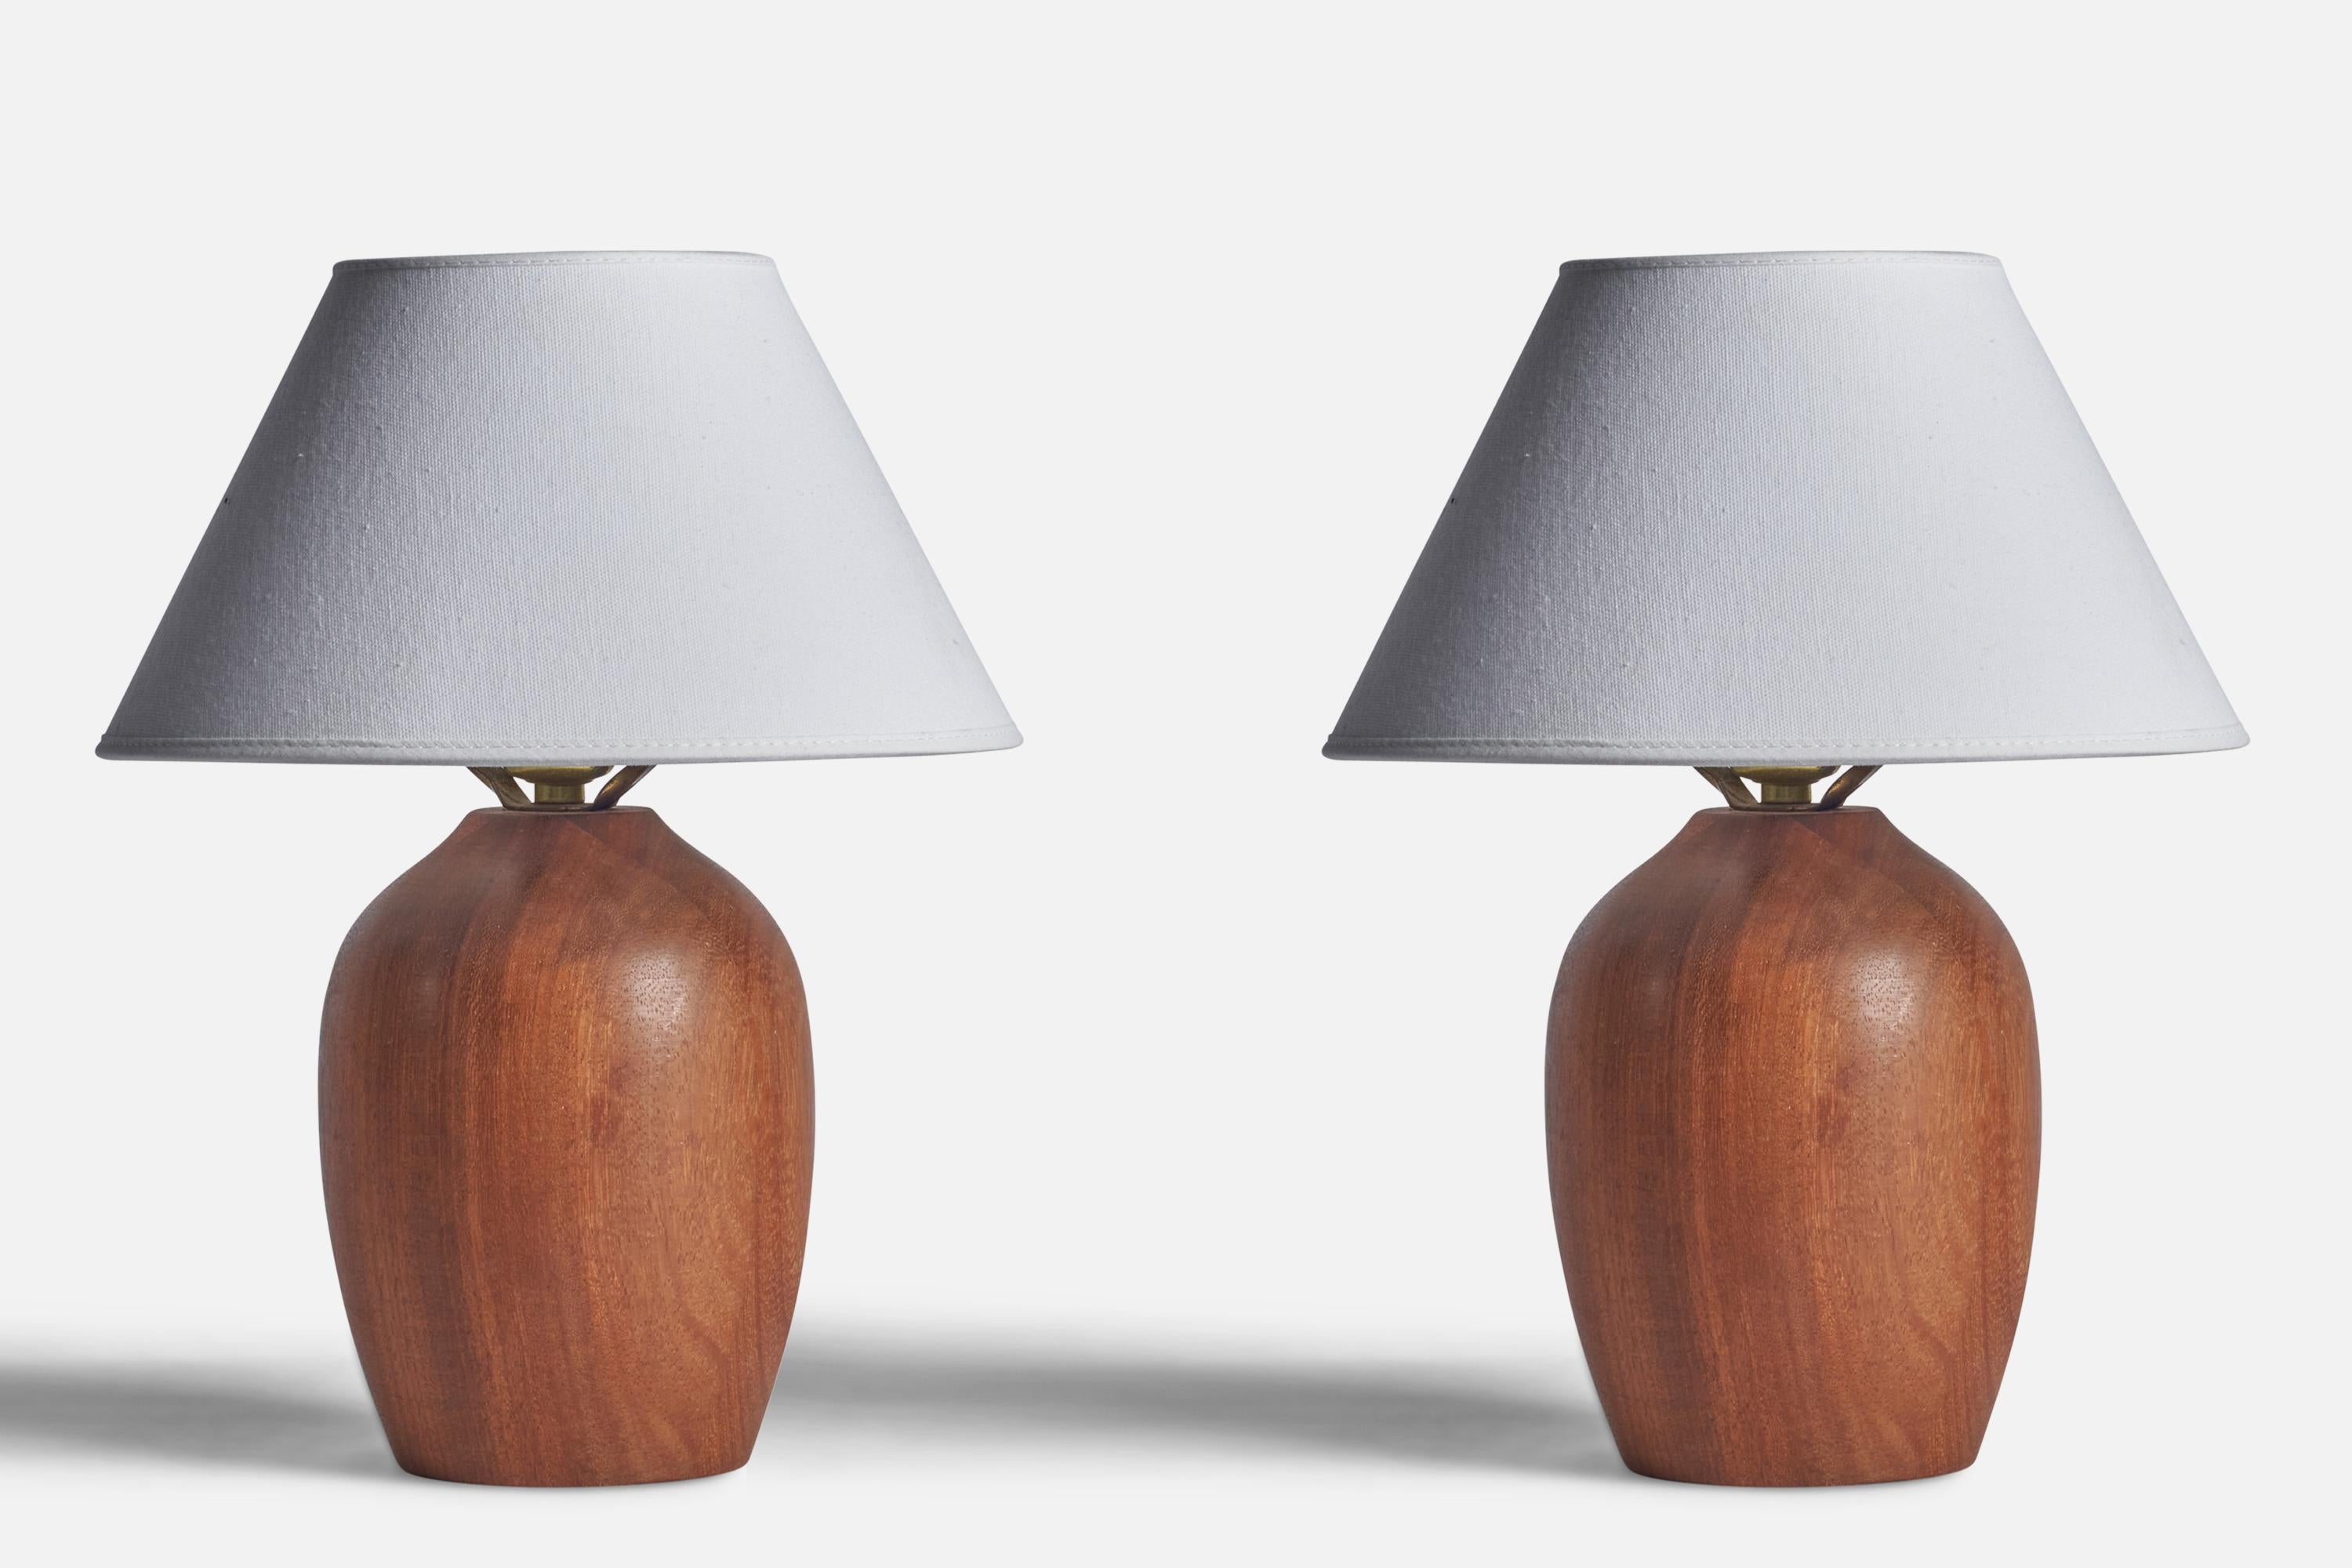 Ein Paar Tischlampen aus Teakholz, entworfen und hergestellt in den USA, 1950er Jahre.

Abmessungen der Lampe (Zoll): 9,75